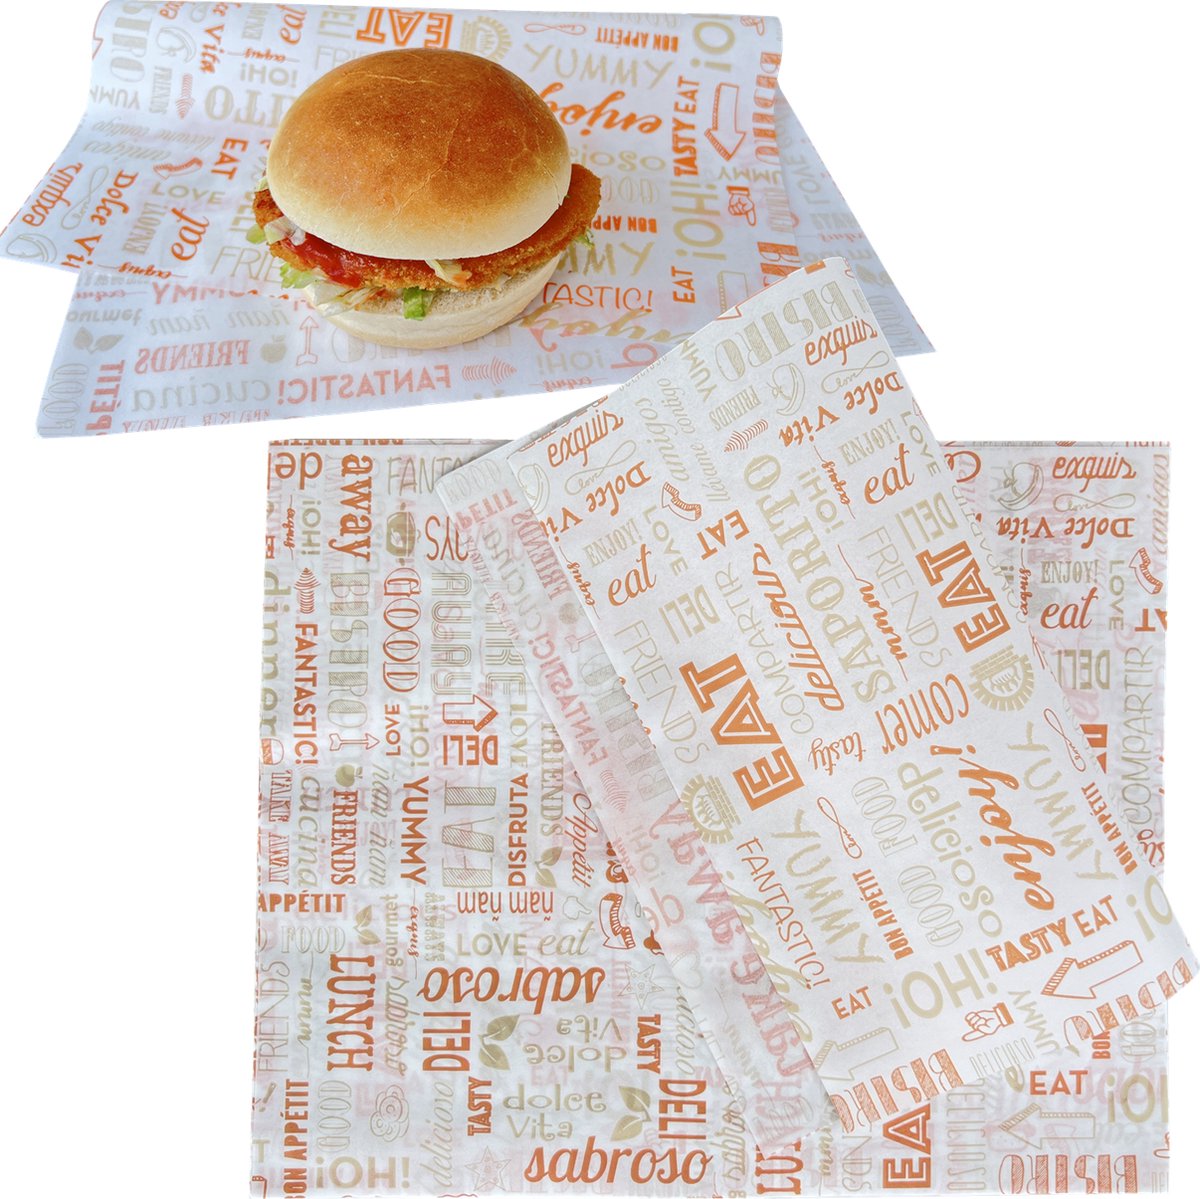 Rainbecom - 28 x 34 cm - 50 Stuks - Hamburger Vetvrij Papier - Duurzaam - Vocht en Vetbestendig - Papieren voor Sandwiches, Hamburgers, Snacks